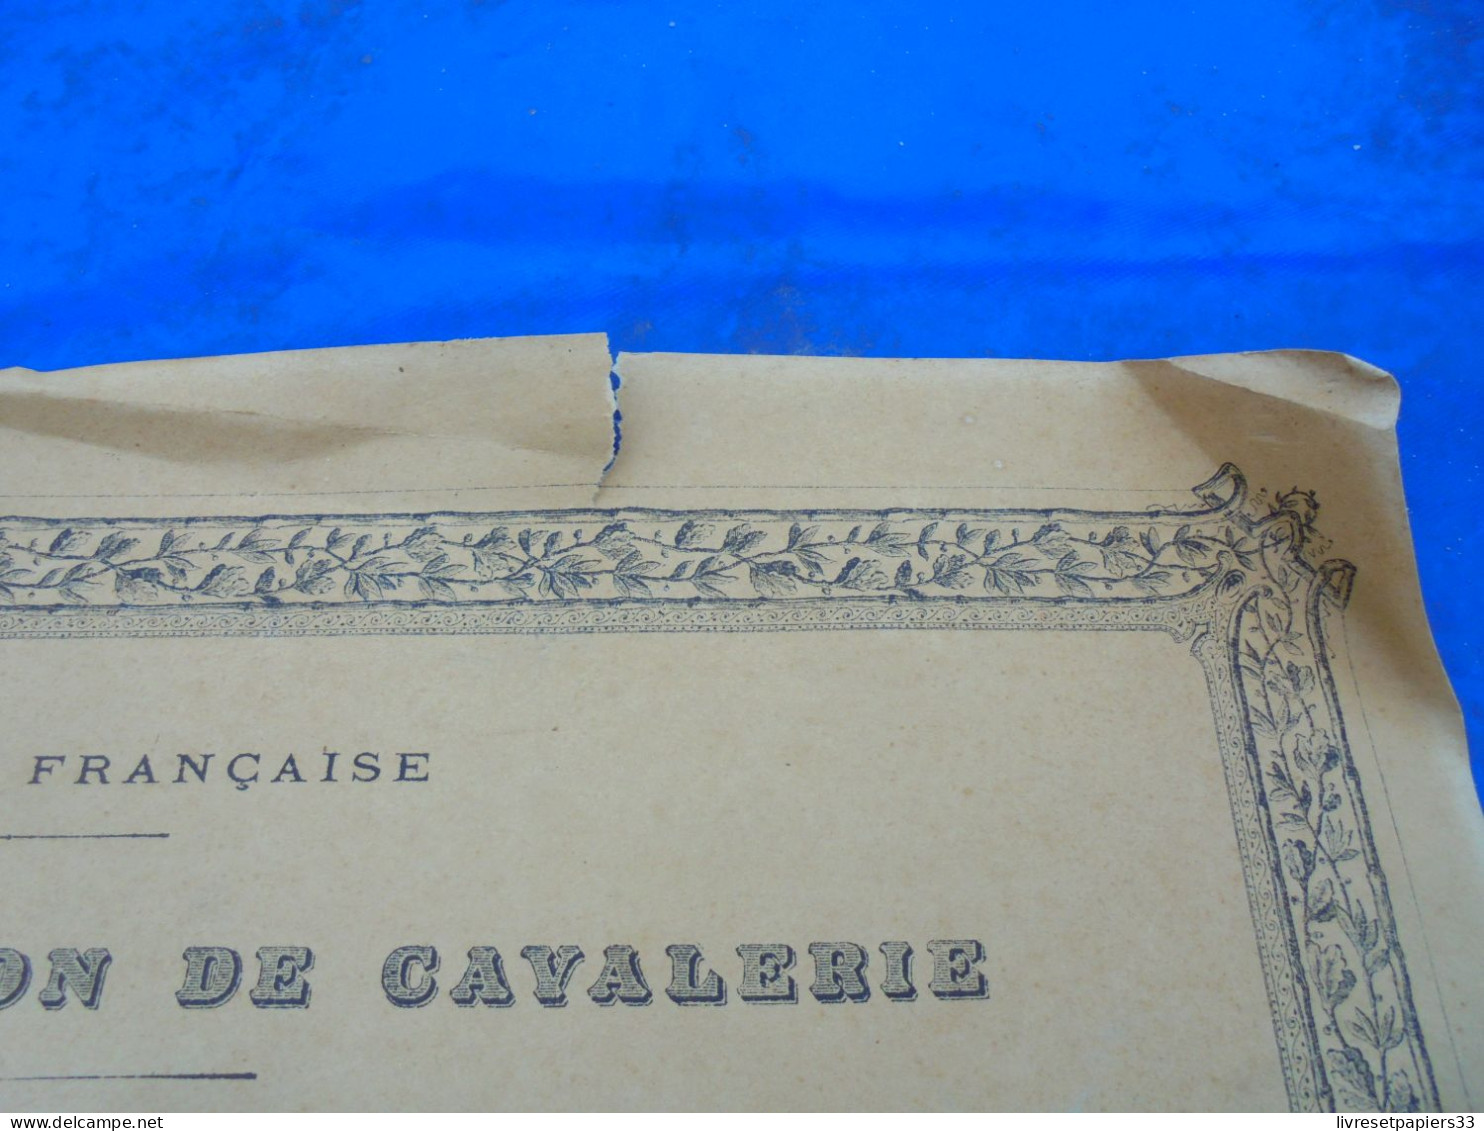 Brevet Prévot De Sabre R. Gimbres 8° Régiment De Cuirassiers 1907 Escrime - Documenti